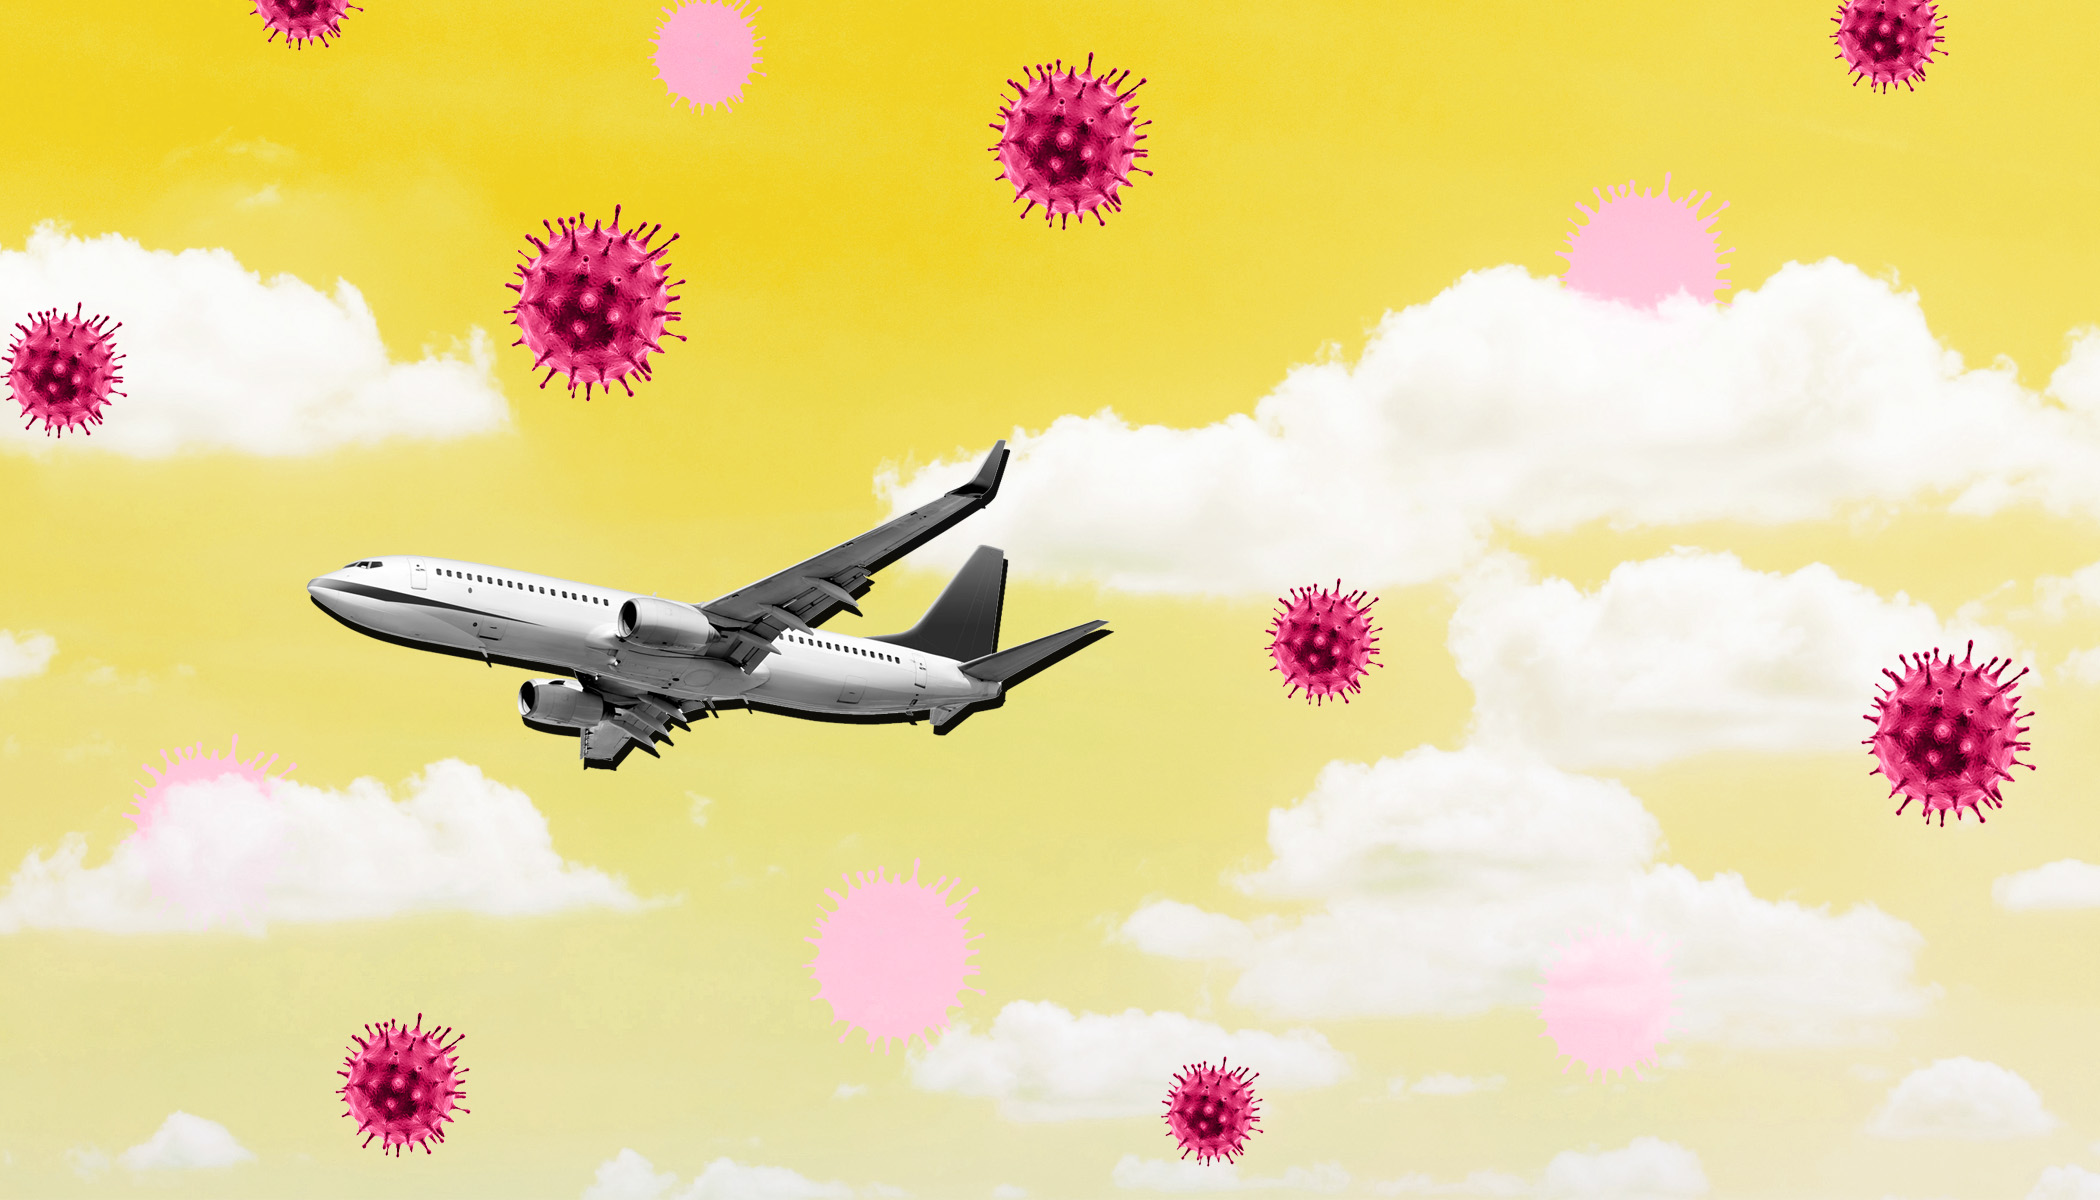 Airplane flies through coronavirus.